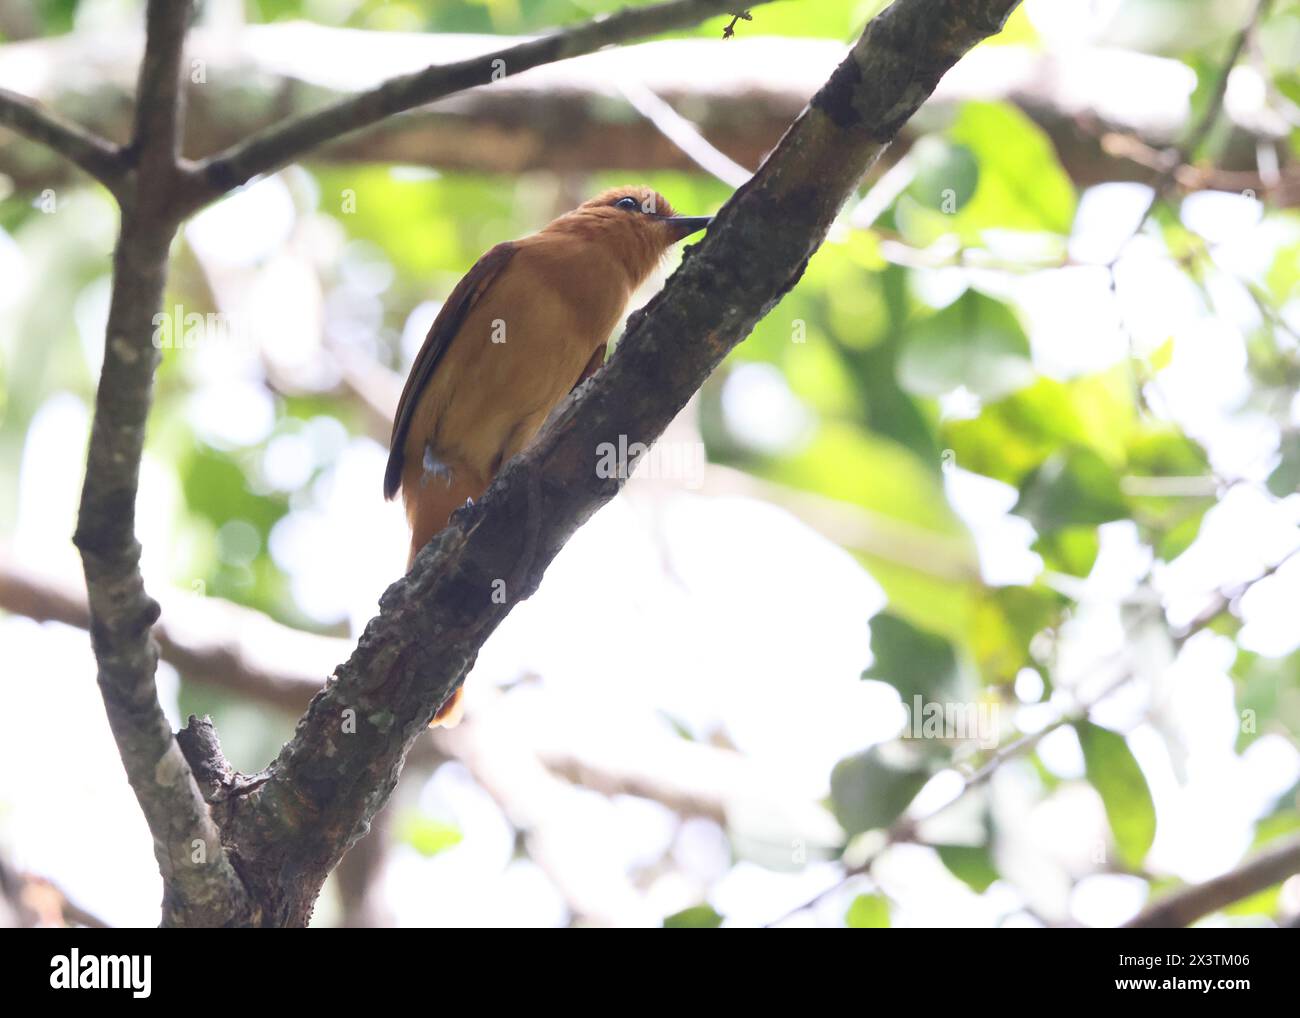 La cannella attila (Attila cinnamomeus) è una specie di uccello della famiglia Tyrannidae, i cacciatori di mosca tiranno. Questa foto è stata scattata in Colombia. Foto Stock